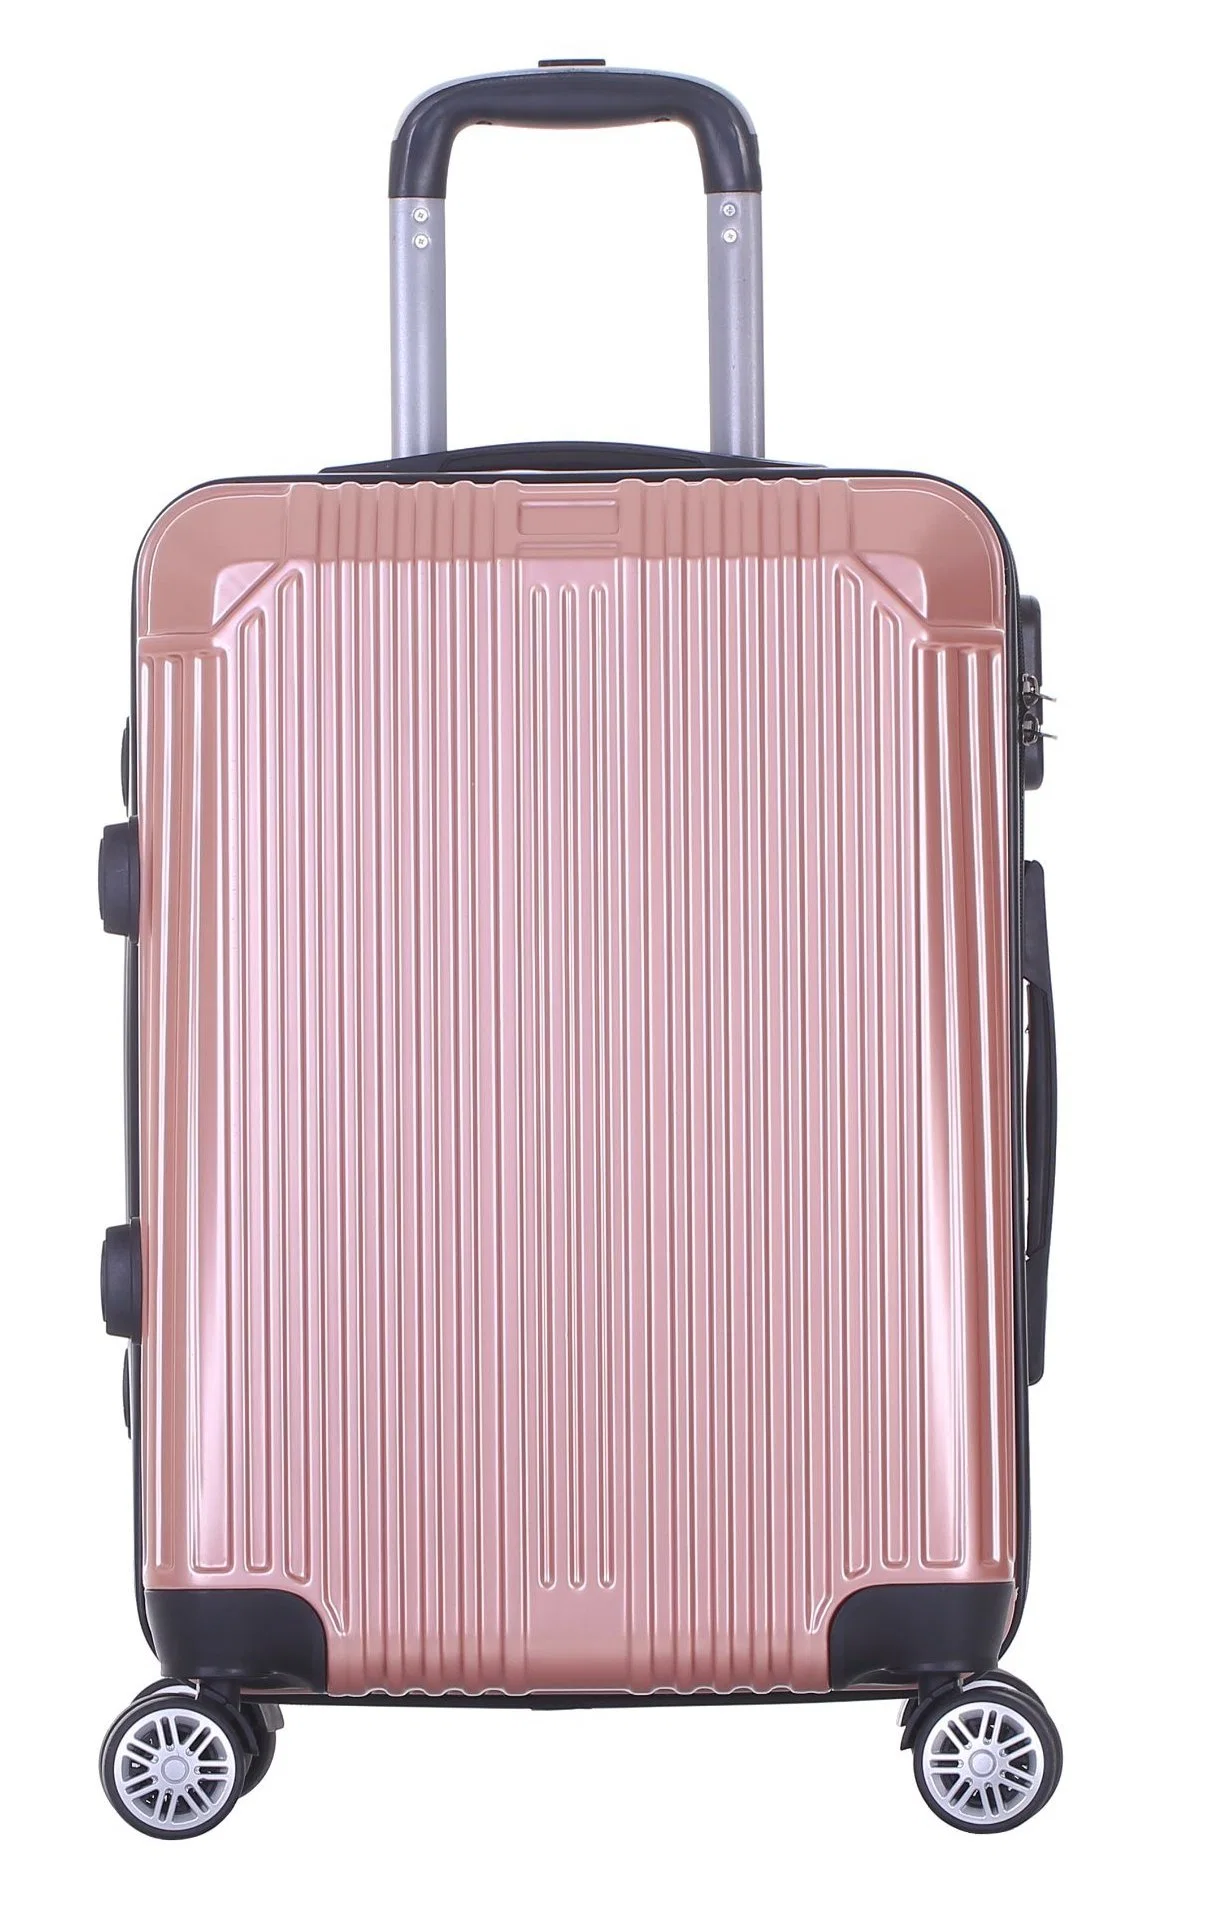 2020 Travel Bag Trolley School Bag ABS+PC Luggage Set Xhp127